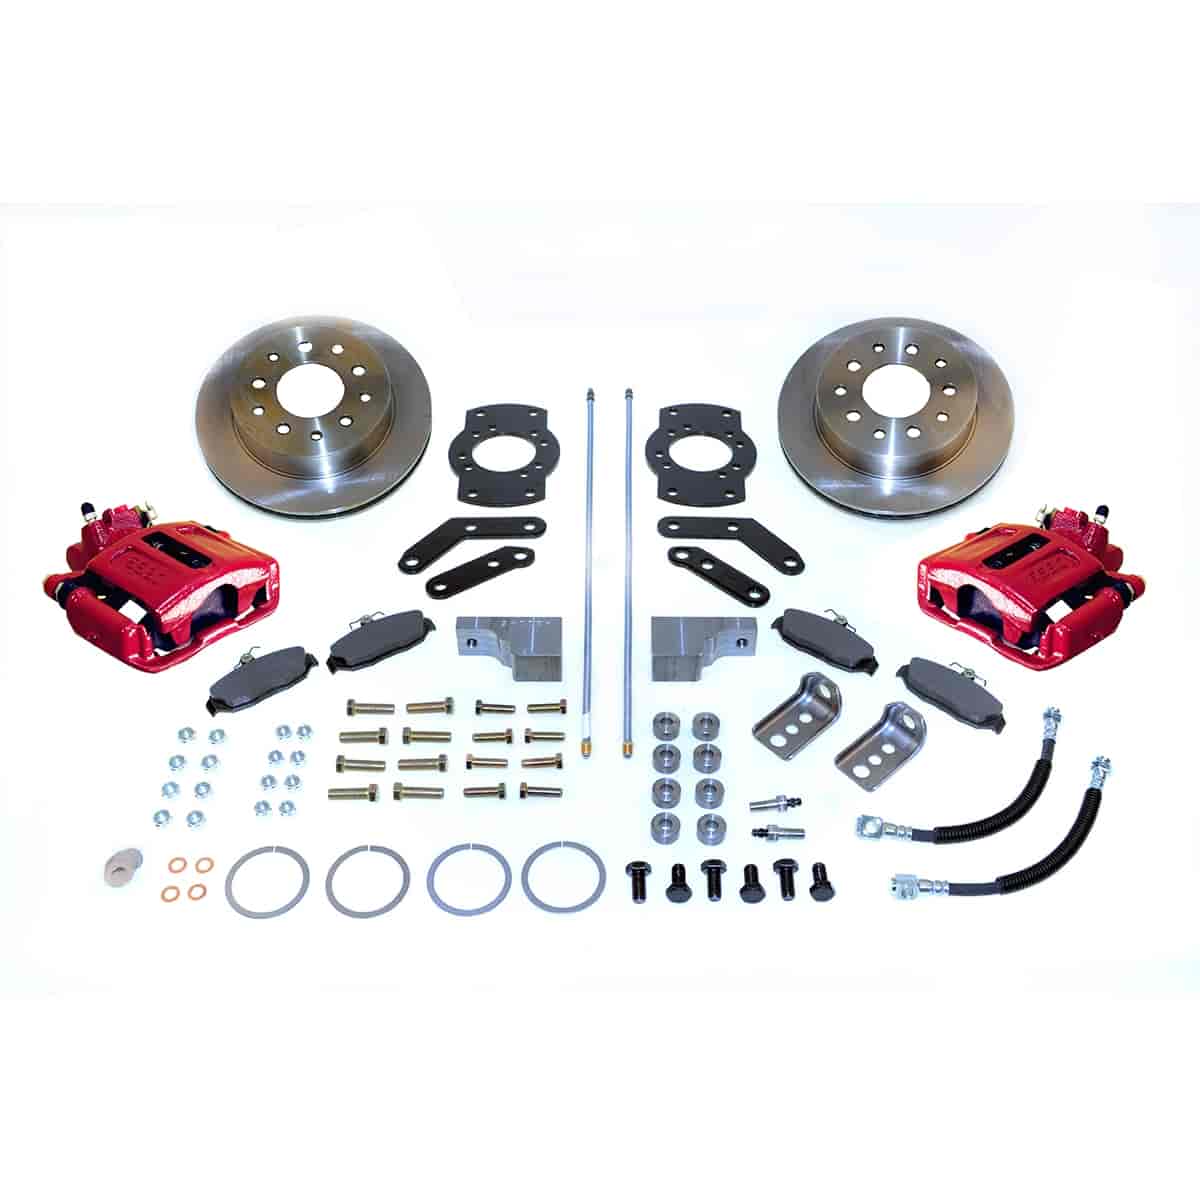 Single Piston Rear Disc Brake Conversion Kit For GM 10- & 12-Bolt Non-staggered Shocks & C-clip or Non C-clip Axles